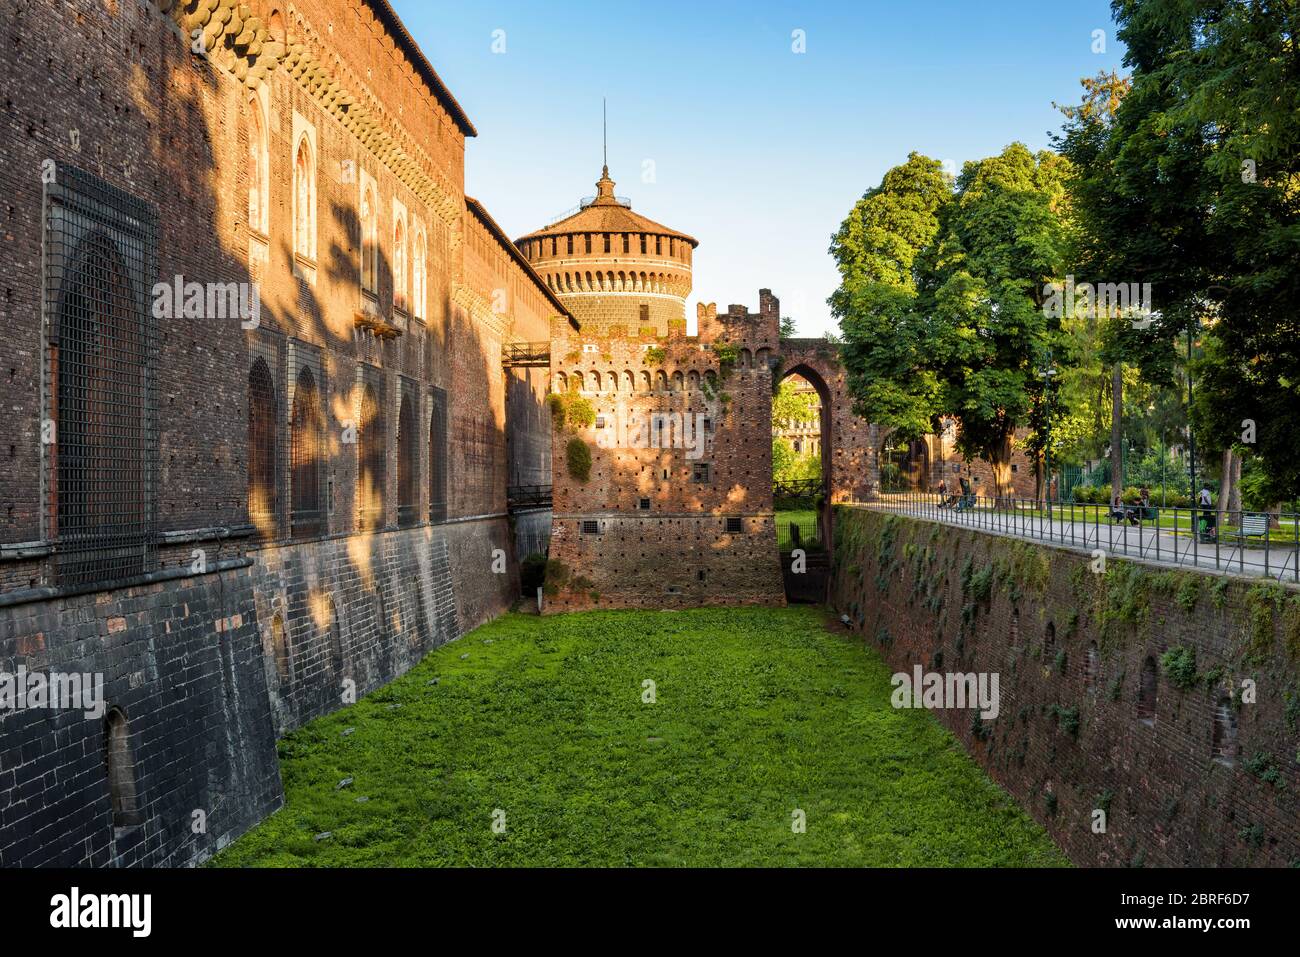 Sforza Castel (Castello Sforzesco) in Mailand, Italien. Diese Burg wurde im 15. Jahrhundert von Francesco Sforza, Herzog von Mailand, erbaut. Stockfoto